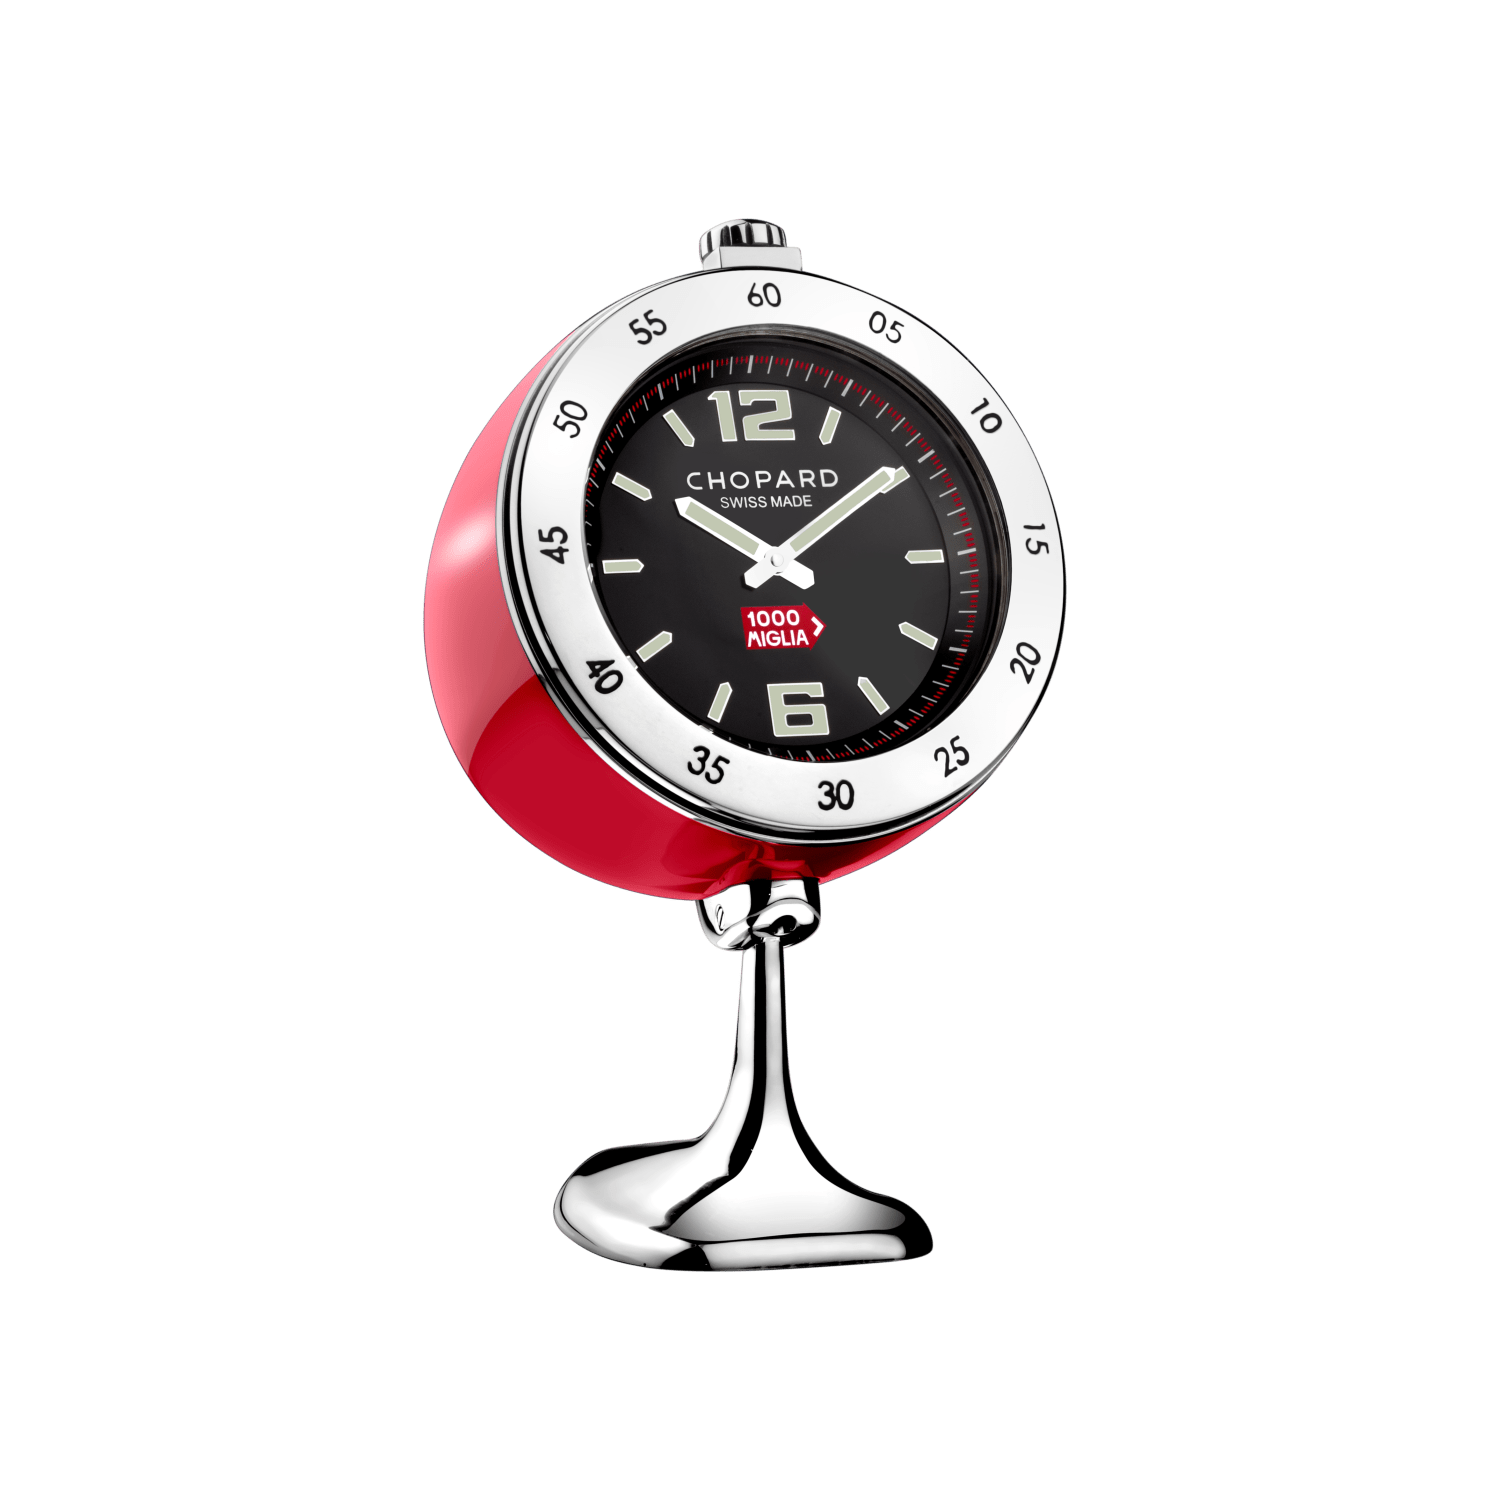 Reloj de mesa vintage racing